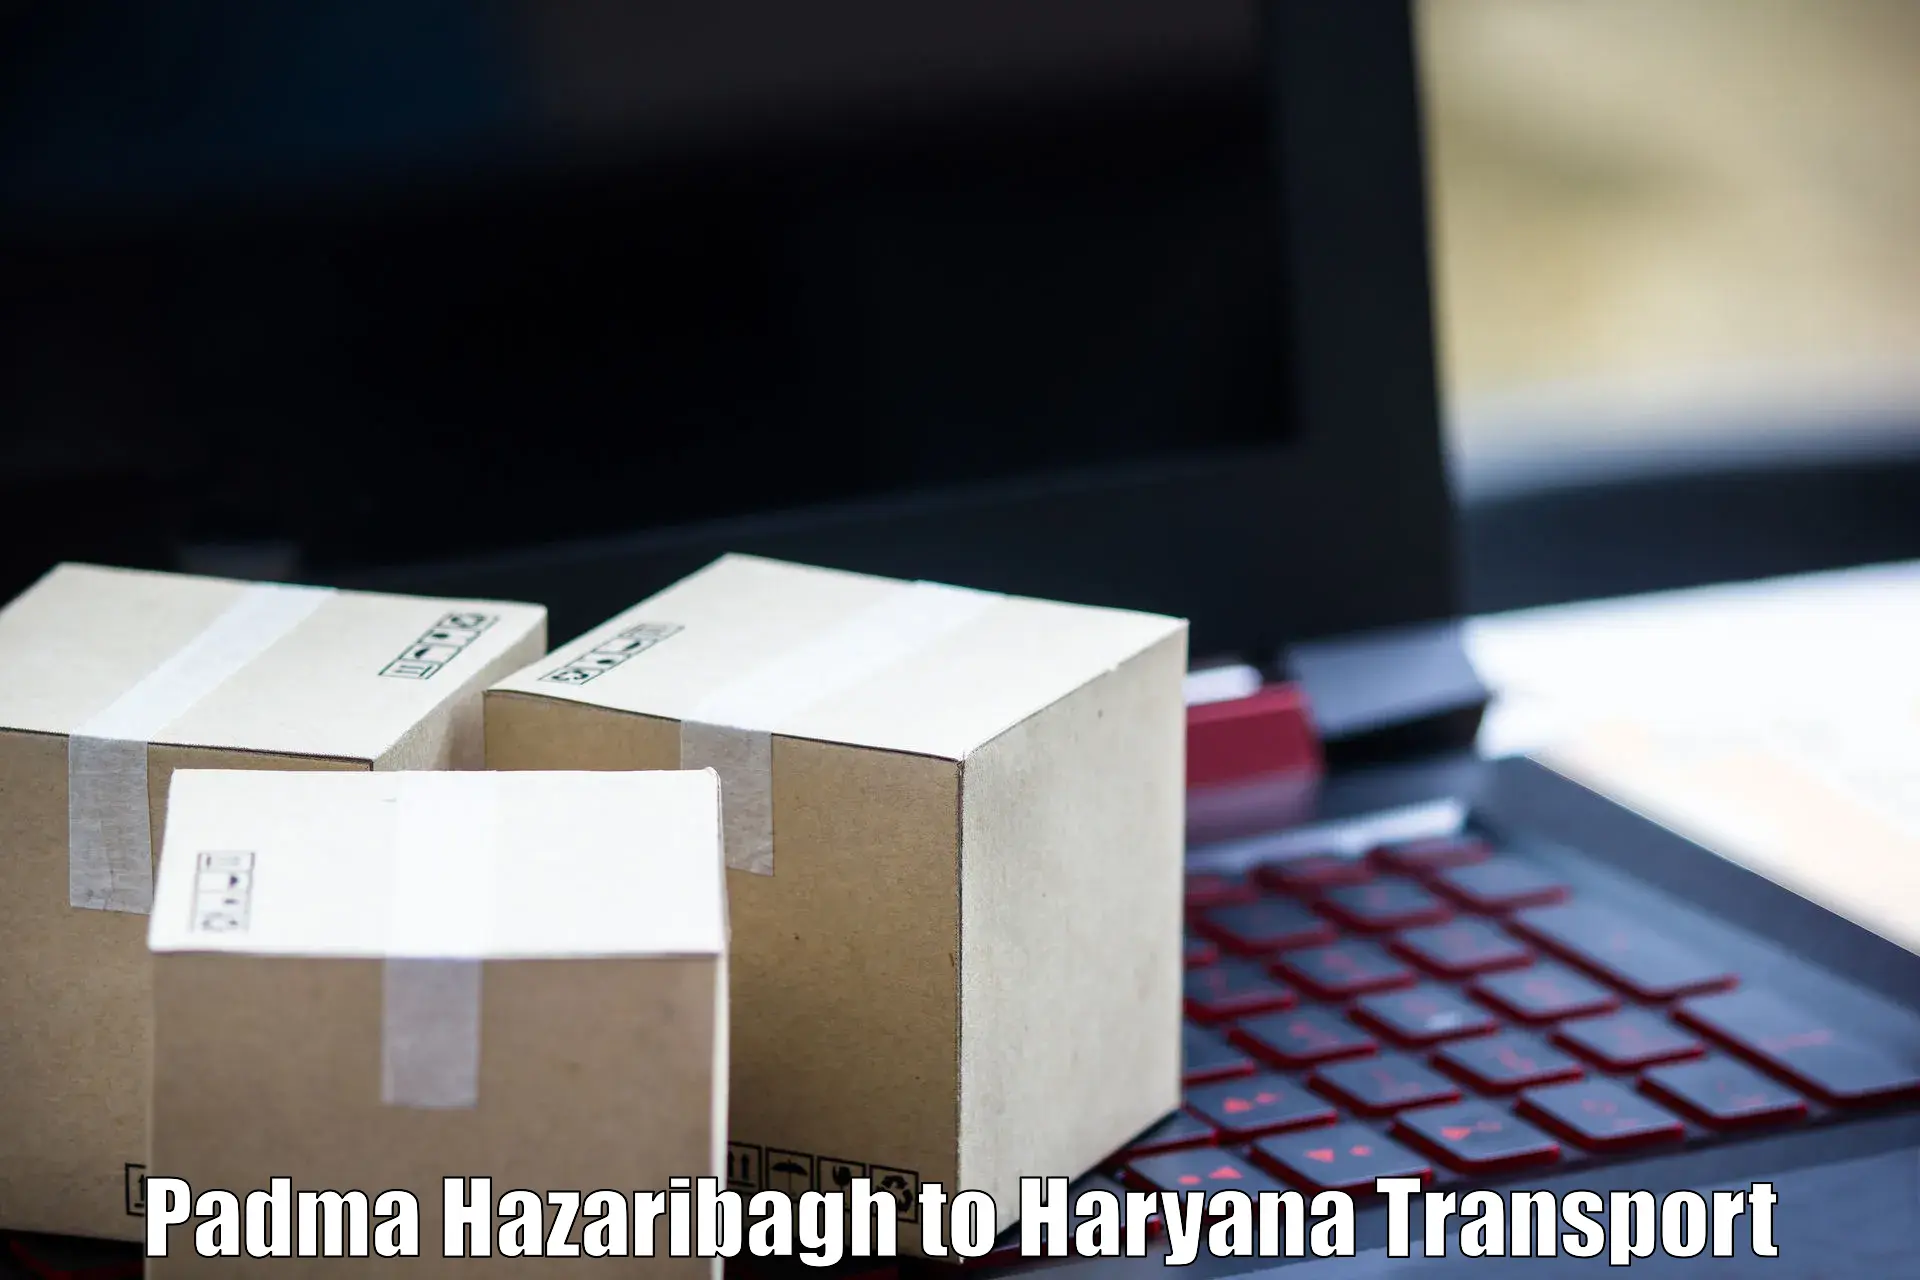 Bike shipping service Padma Hazaribagh to Kurukshetra University